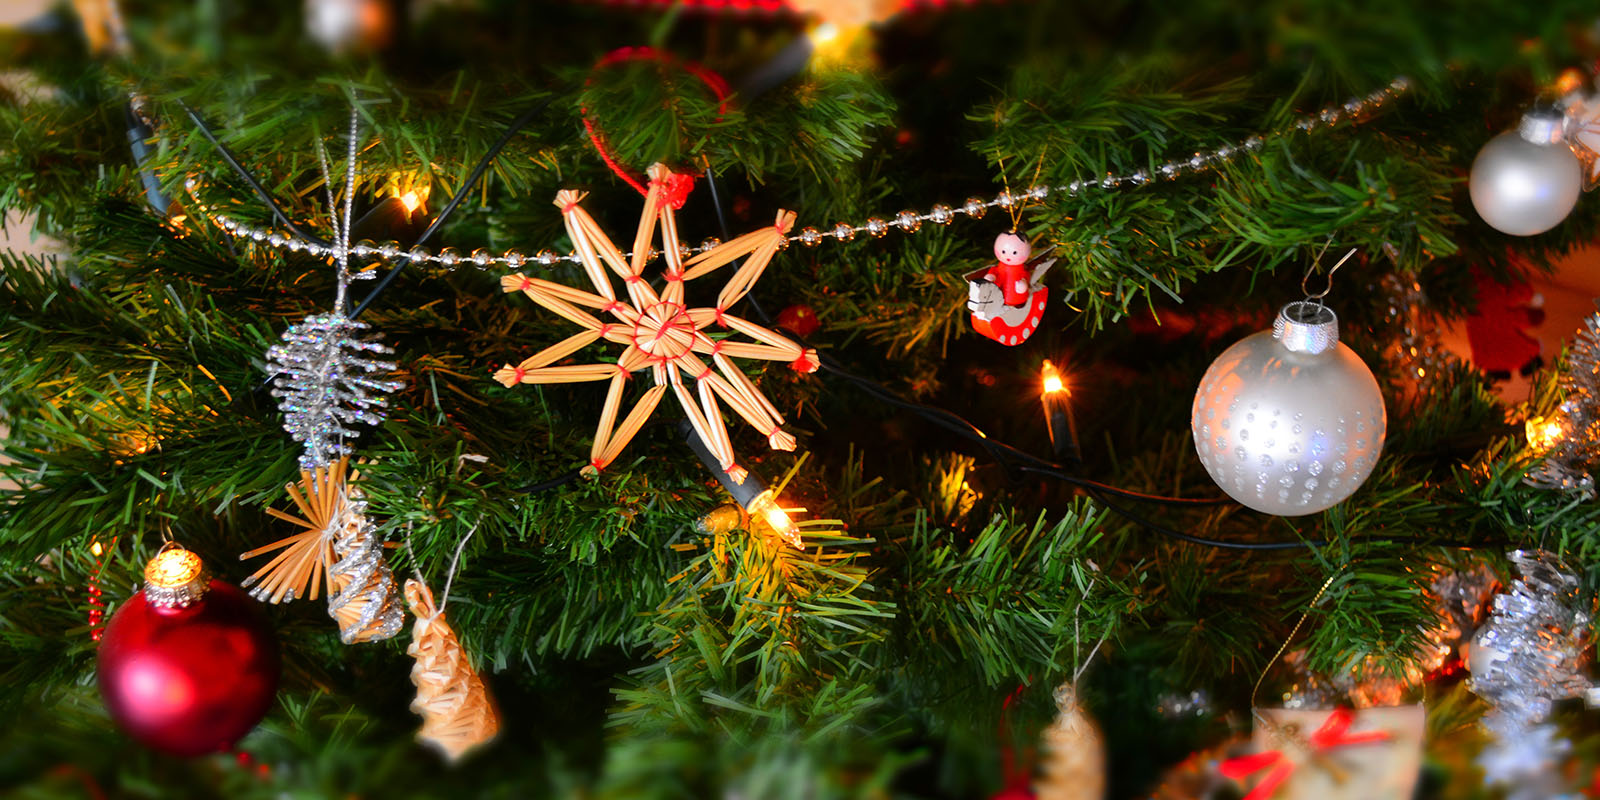 En närbild på en julgran där det hänger massa julpynt